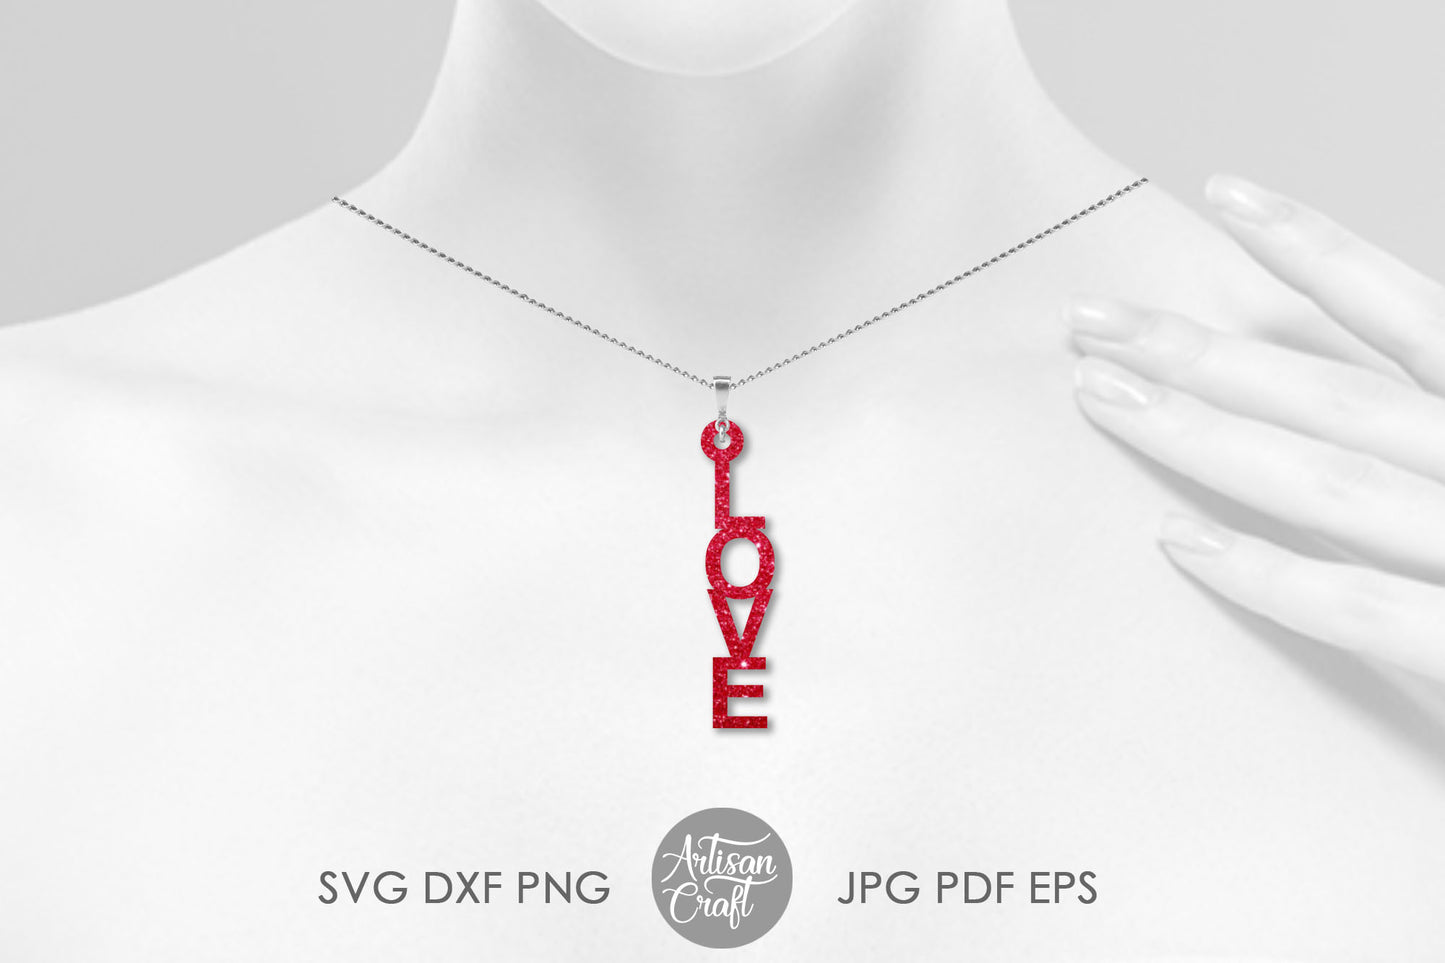 FREE SVG - Love Earrings, Laser Cut File